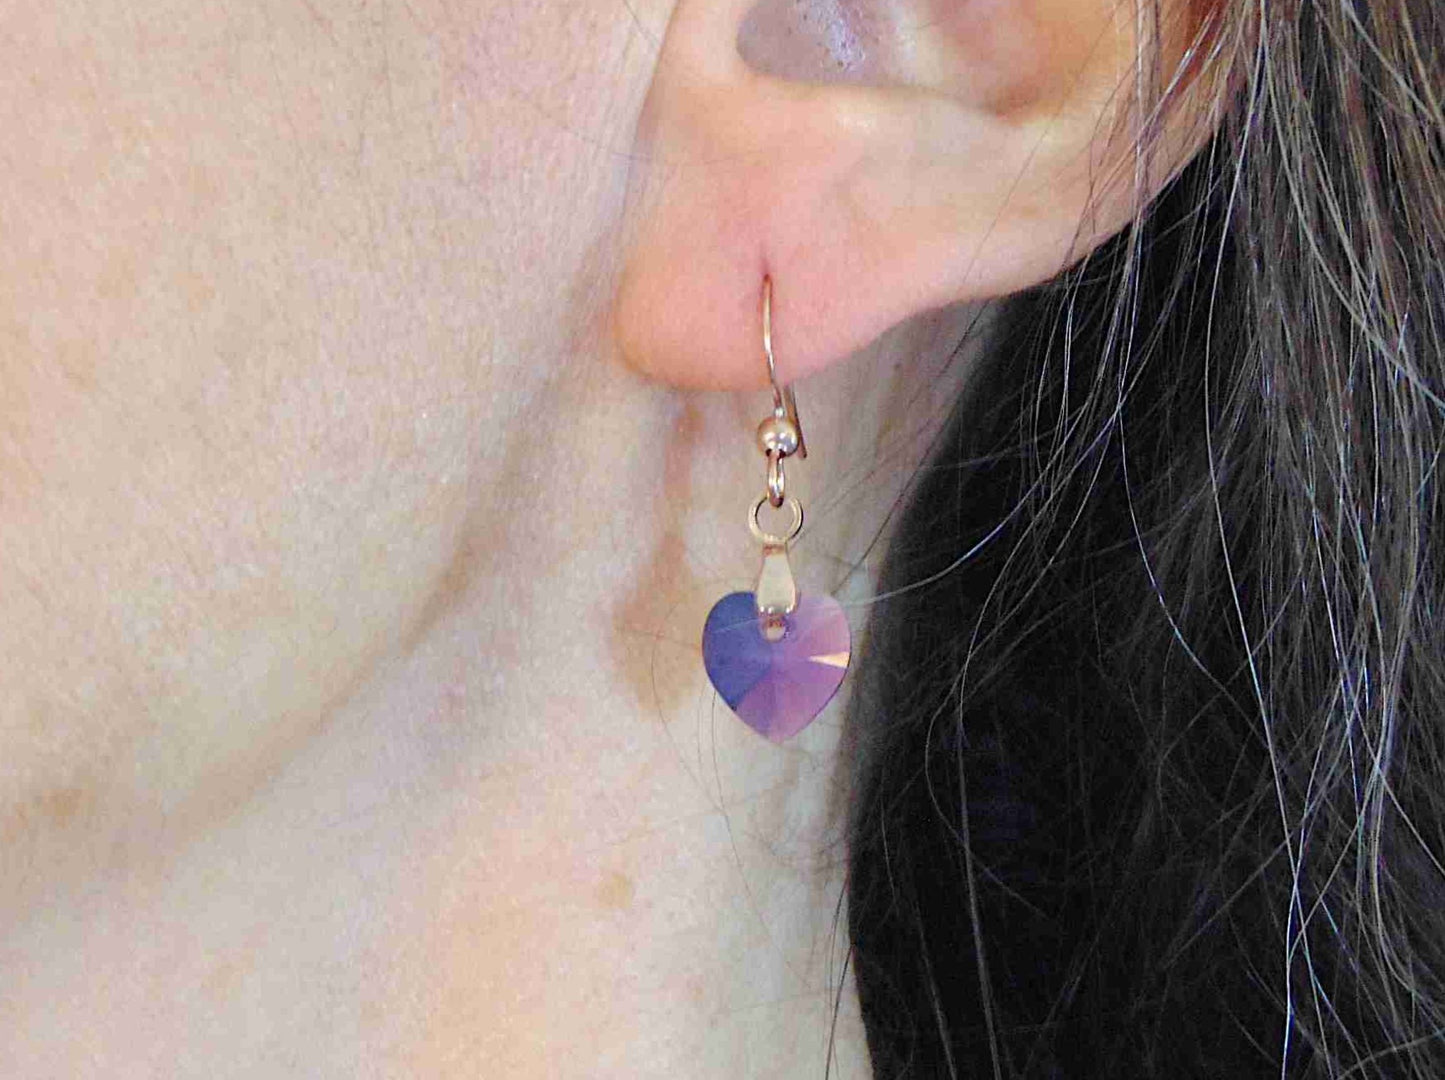 Boucles d'oreilles courtes coeurs de cristal Swarovski 10mm facetté Lilac Shadow (lilas fumé), crochets acier inoxydable or rose